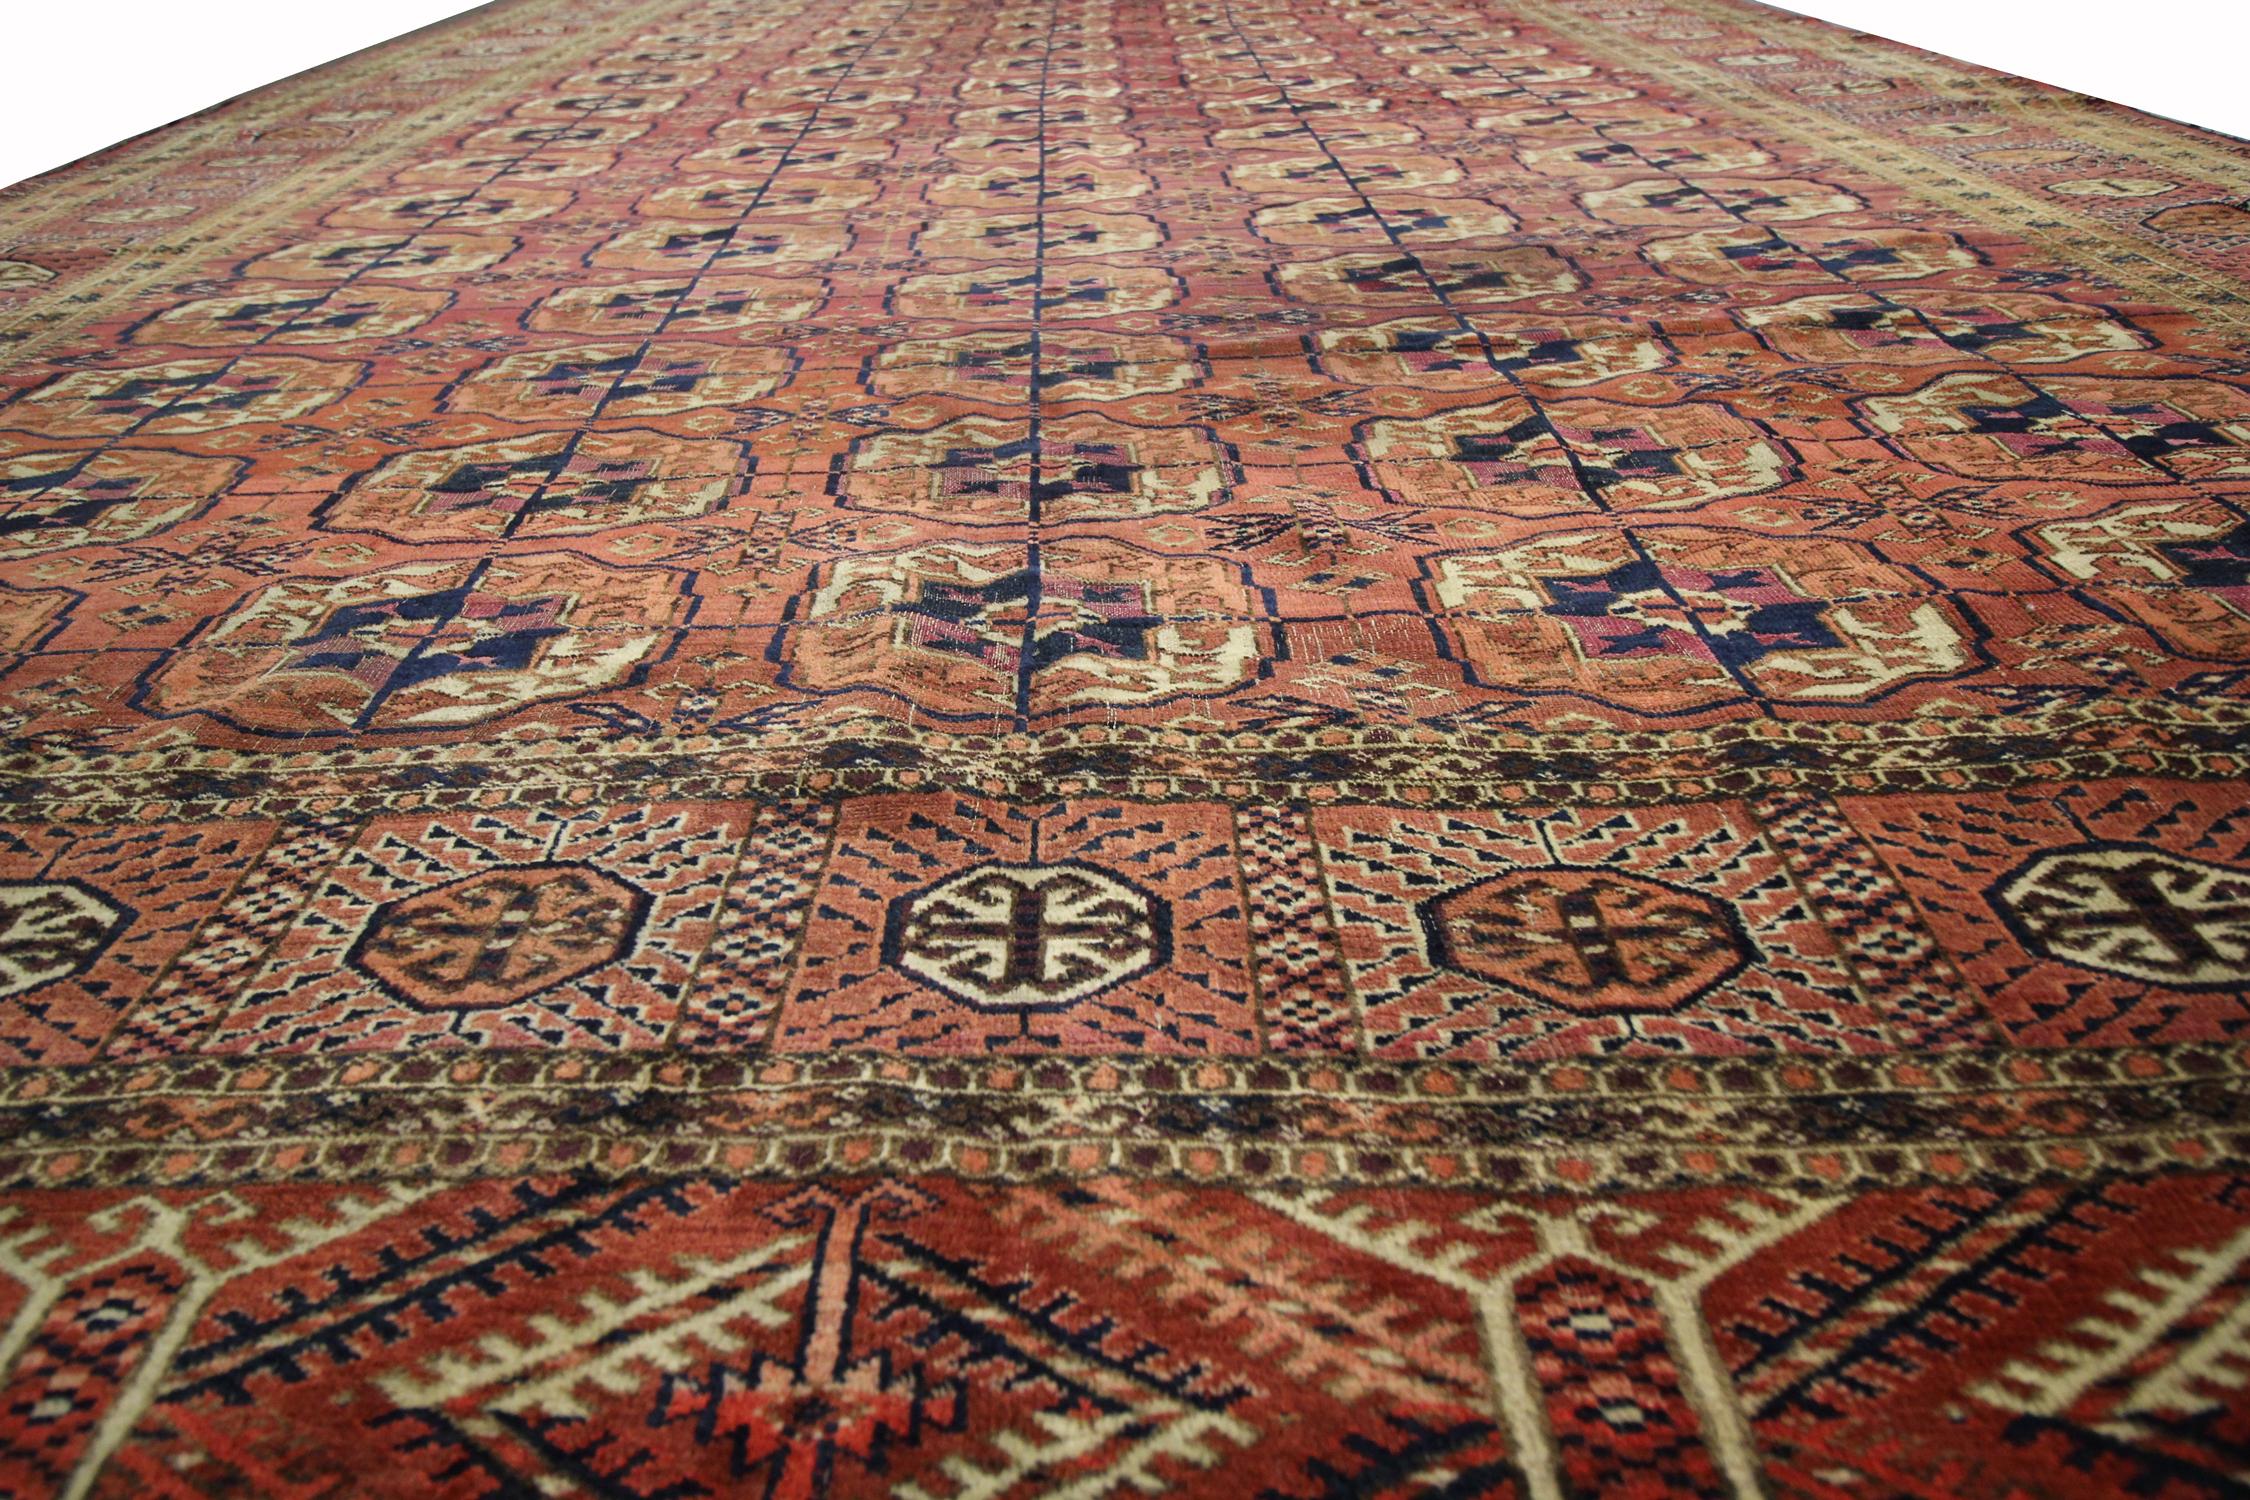 Uzbek Turkmen Area Rug Bokhara Carpet Large Antique Handwoven Carpet